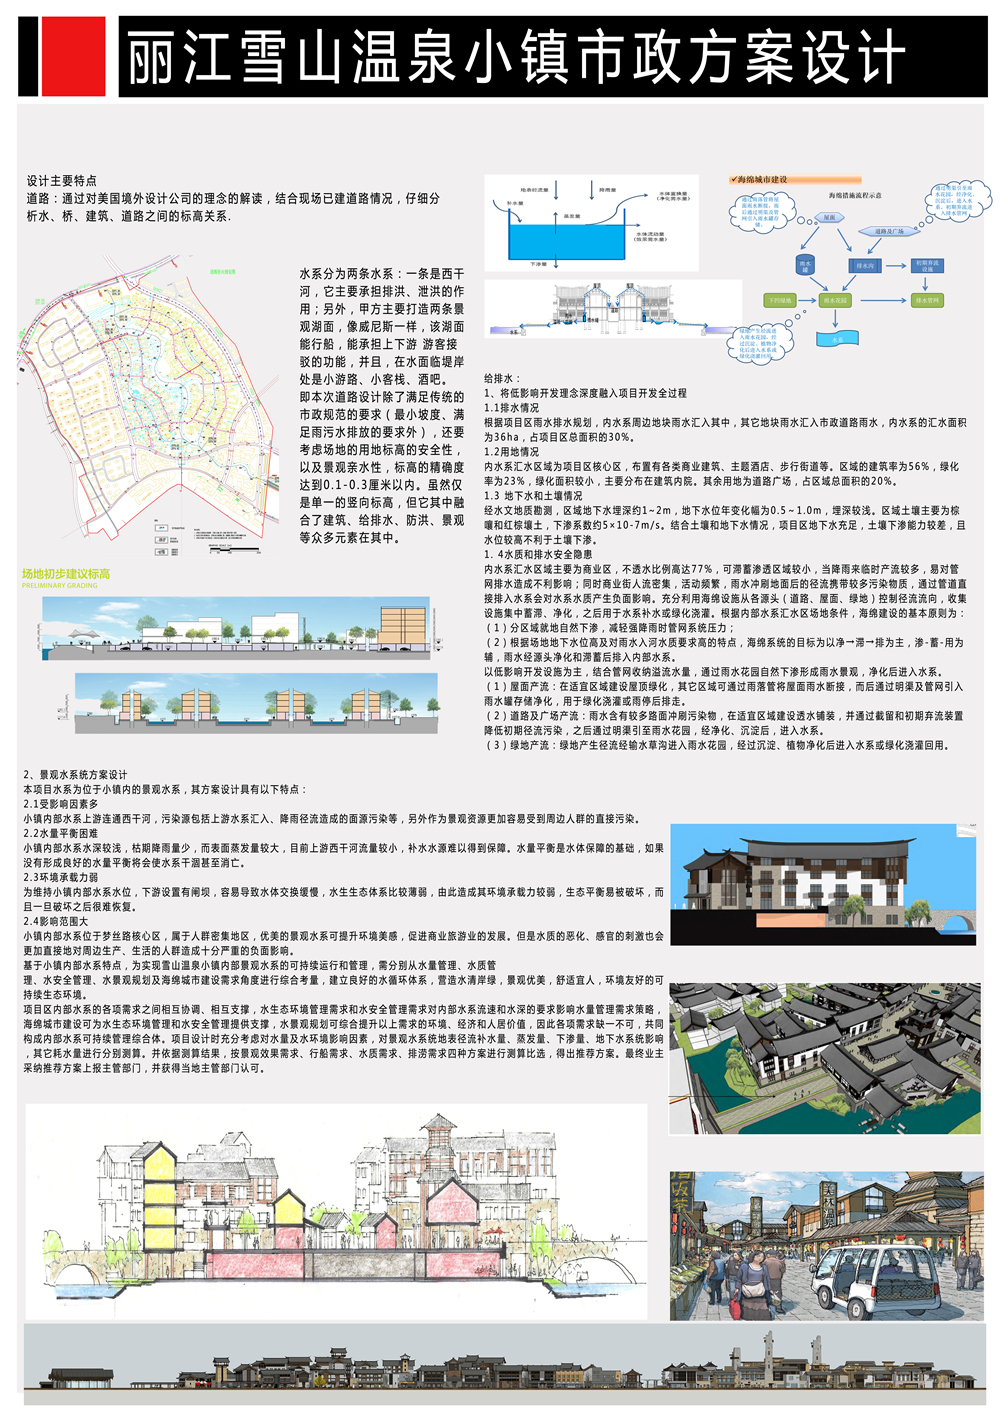 丽江雪山温泉小镇市政工程方案设计